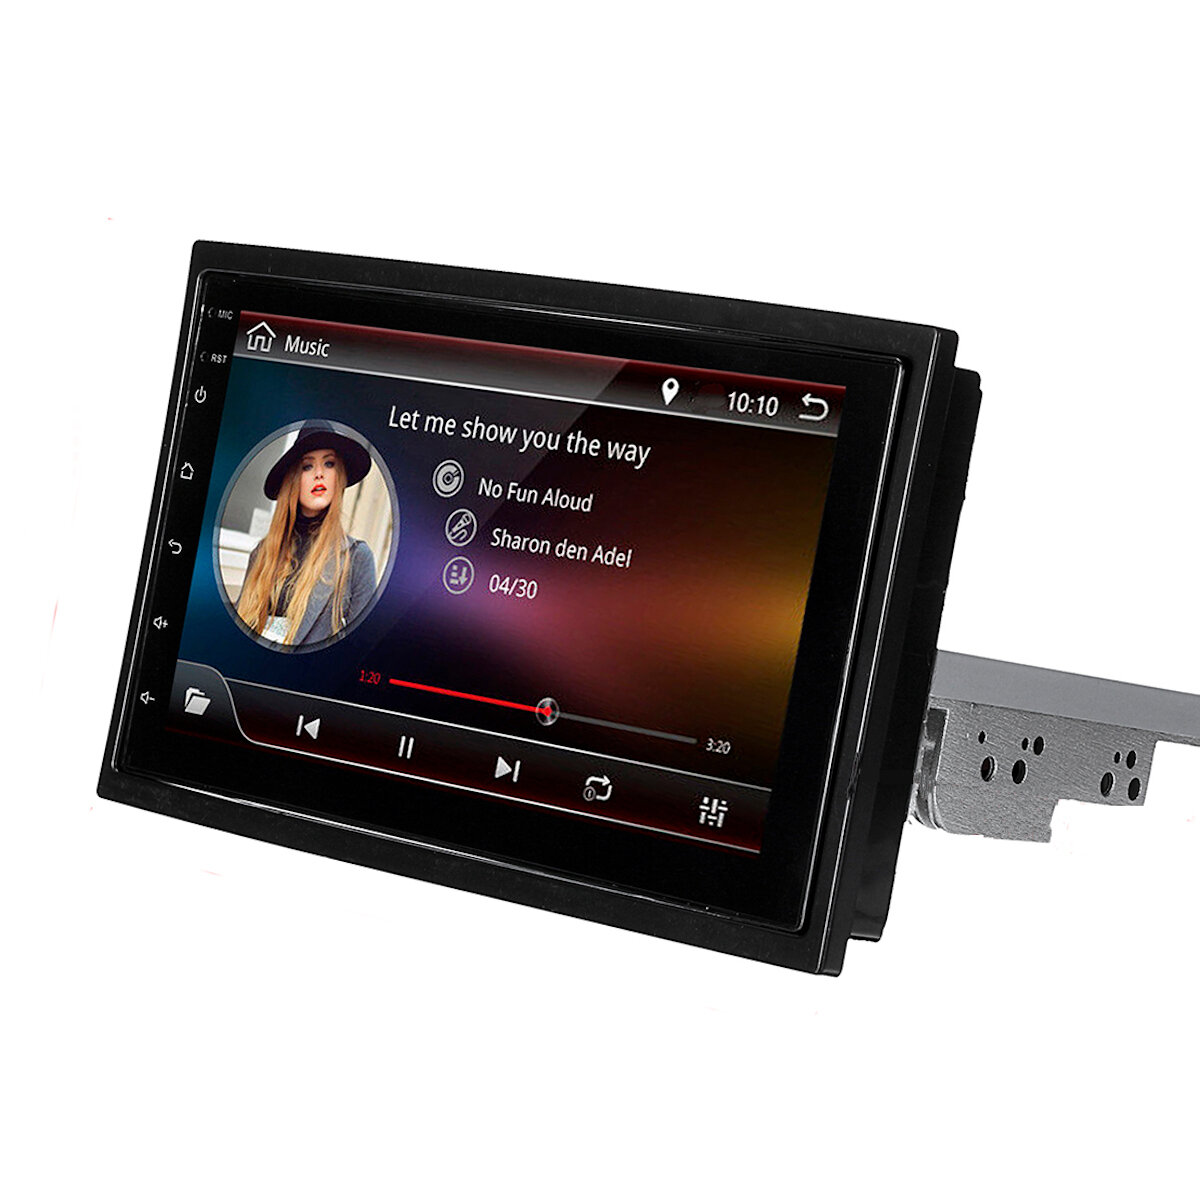 

7 дюймов 1 Din для Android 8.1 Авто Стерео Радио MP5 Player 4 Core 1 + 16G Регулируемый сенсорный экран GPS Wifi FM